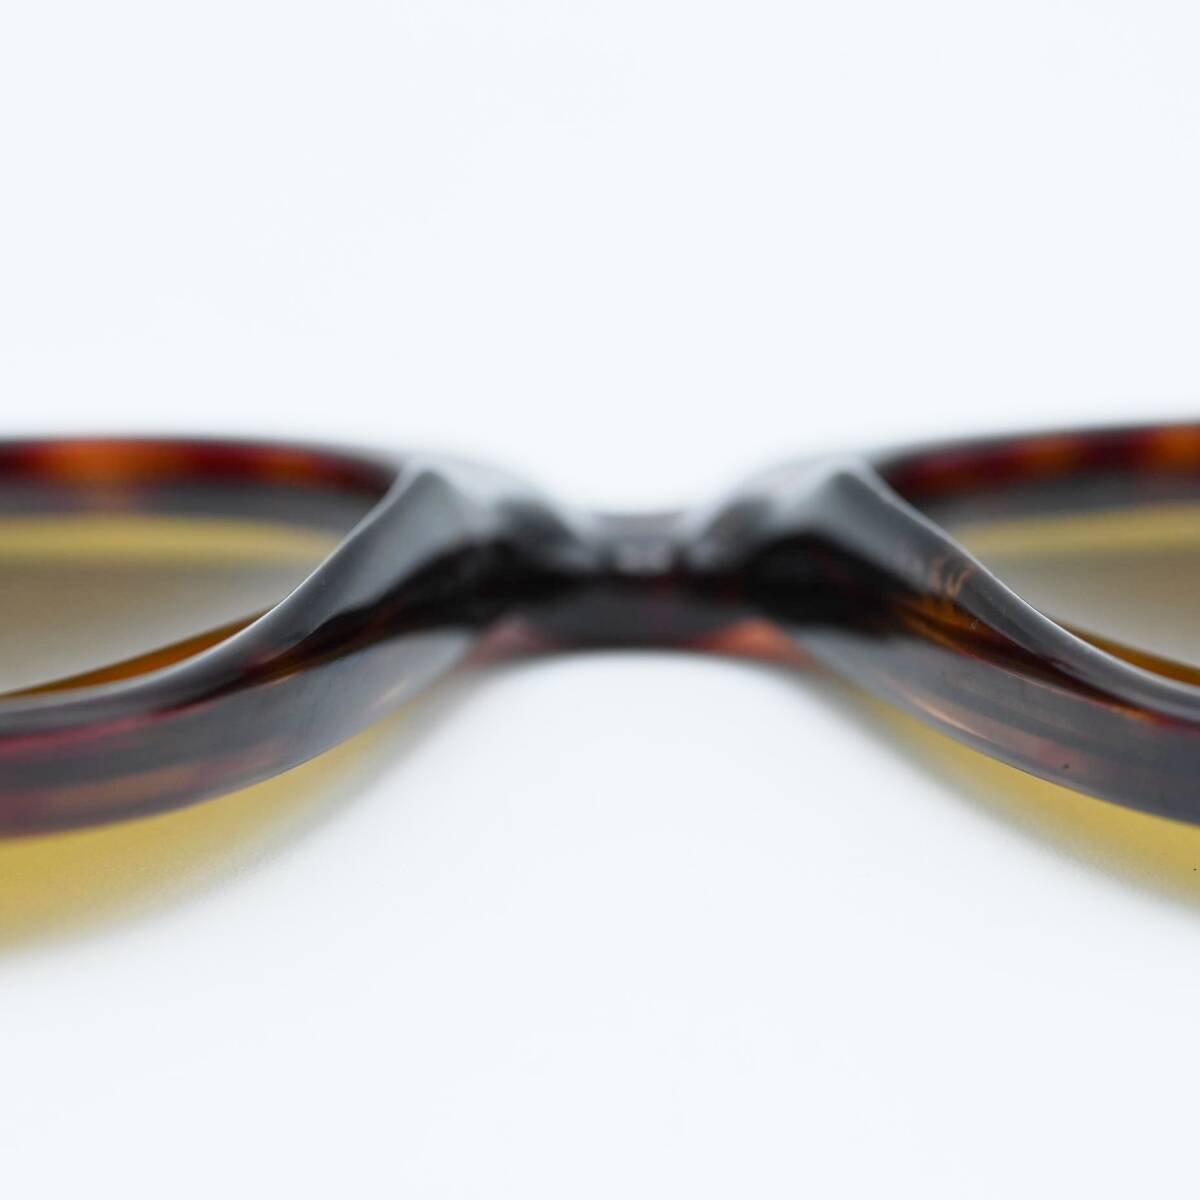 M05 Polo Ralph Lauren Polo Ralph Lauren plastic frame tortoise shell pattern sunglasses Brown 